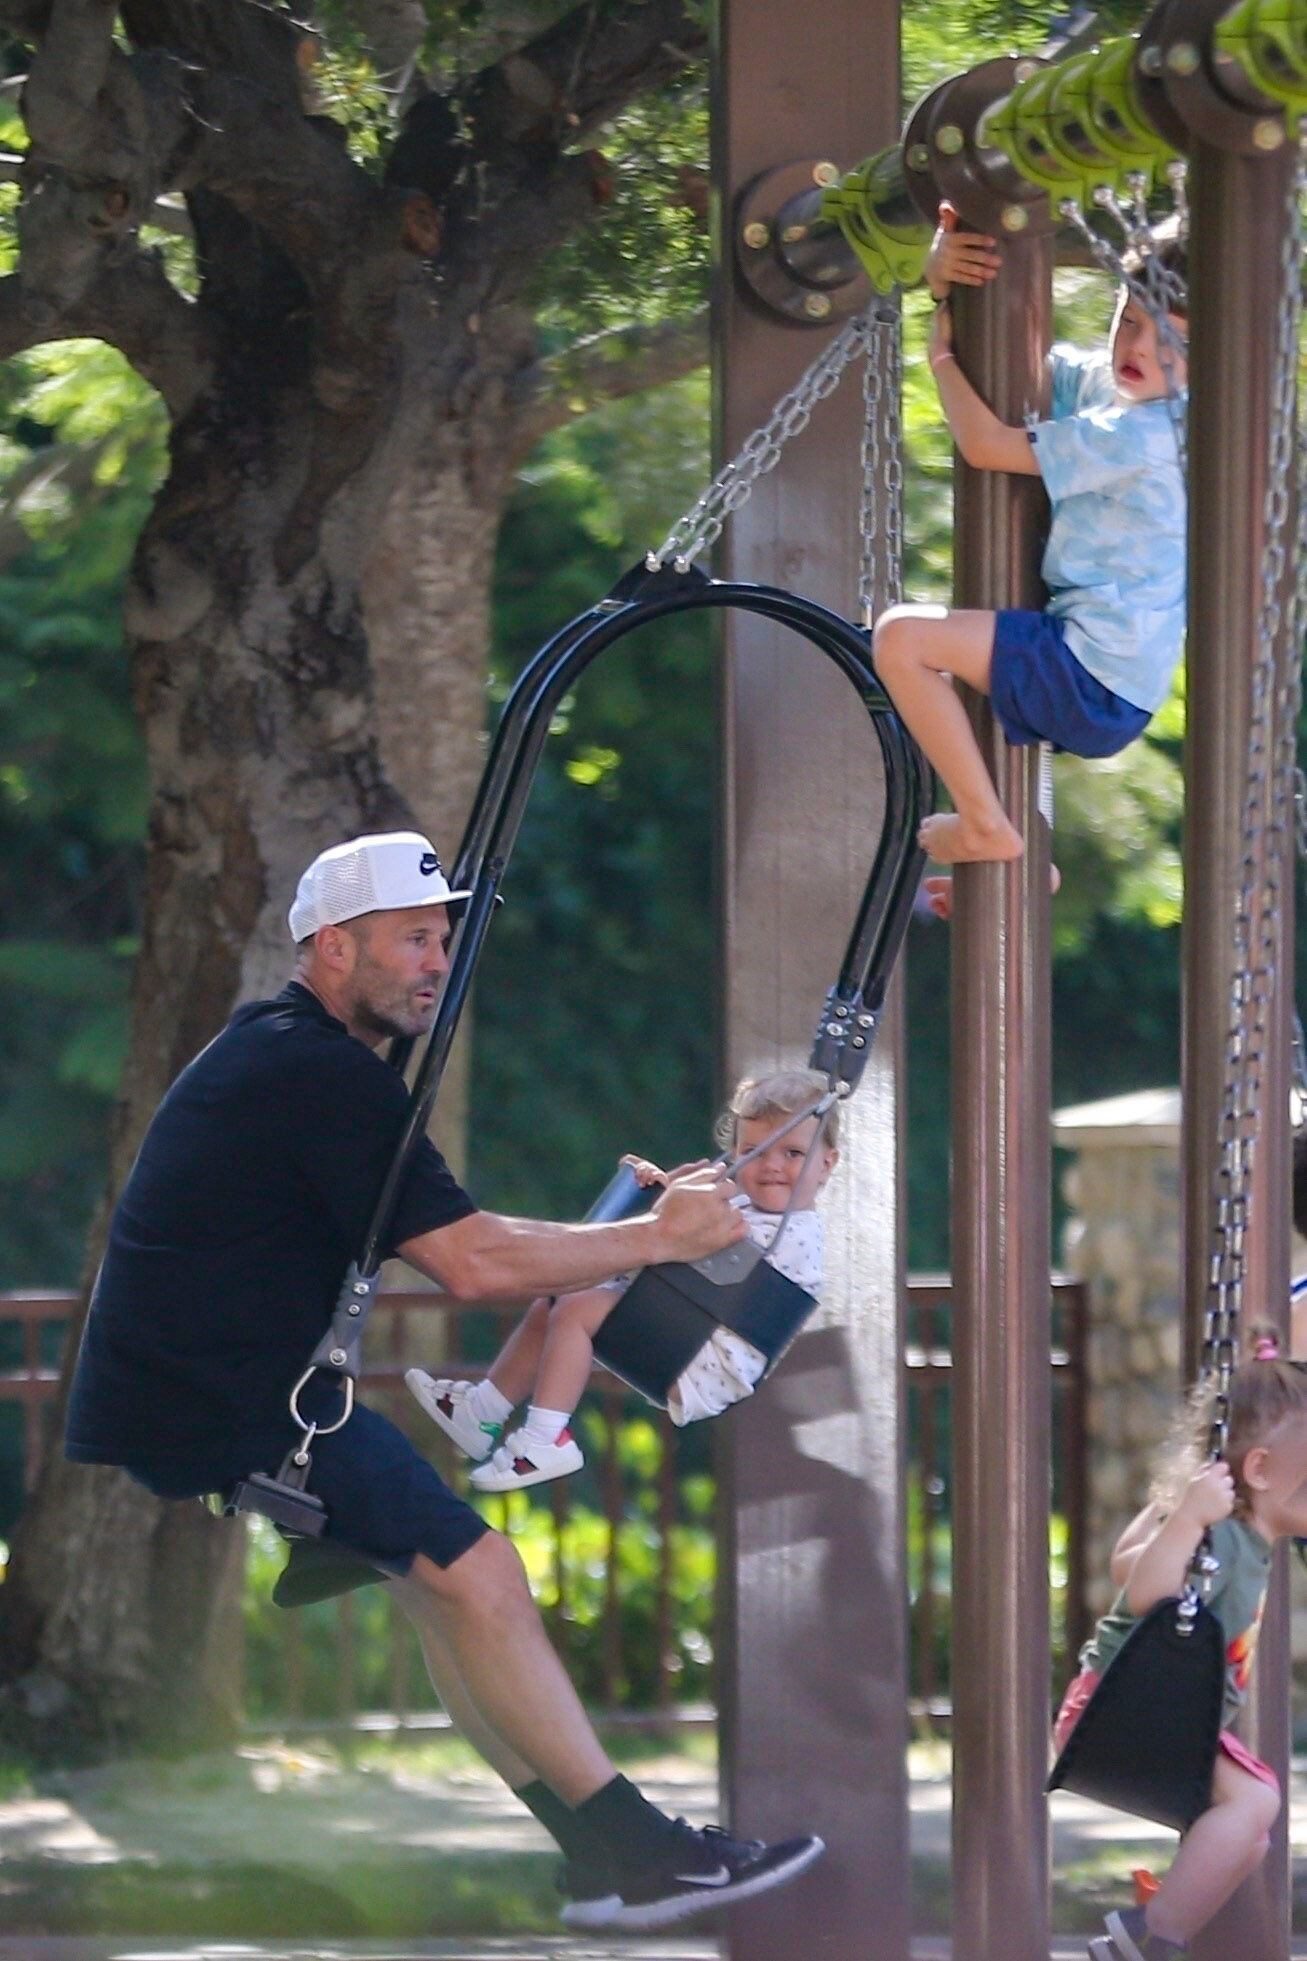 Jason Statham aprovechó un día libre para disfrutar con sus hijos. Los llevó a un parque en Beverly Hills y se los vio entretenidos jugando en las hamacas. El actor de "The Transporter" llevó una gorra para buscar pasar desapercibido